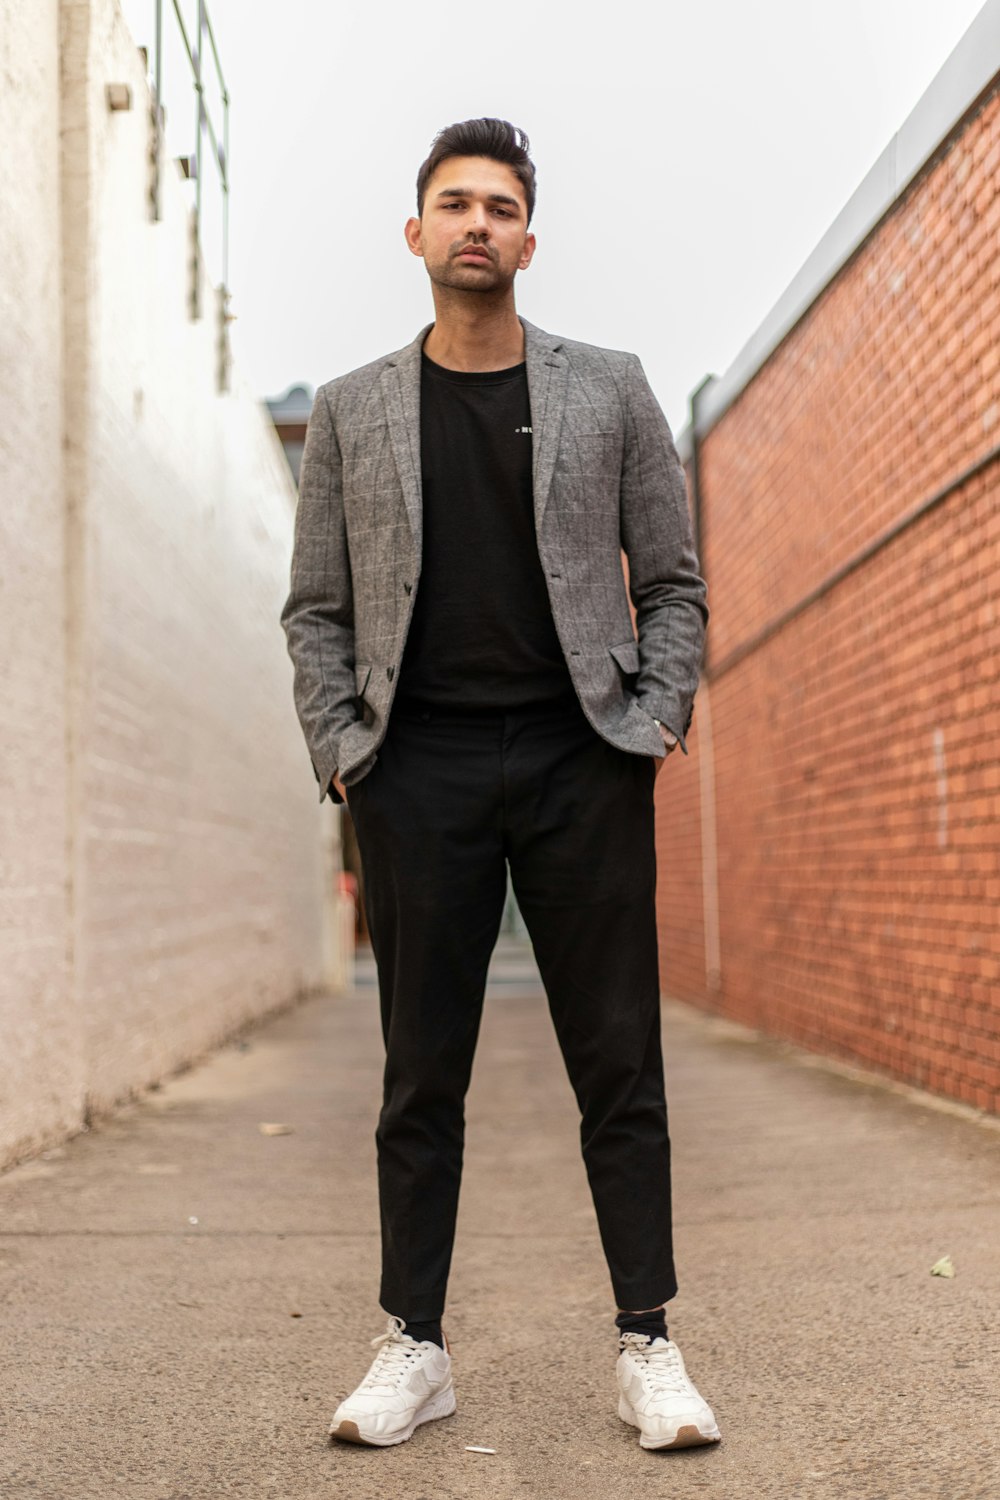 Mann in grauer Anzugjacke und schwarzer Hose, der tagsüber an einer braunen Ziegelwand steht